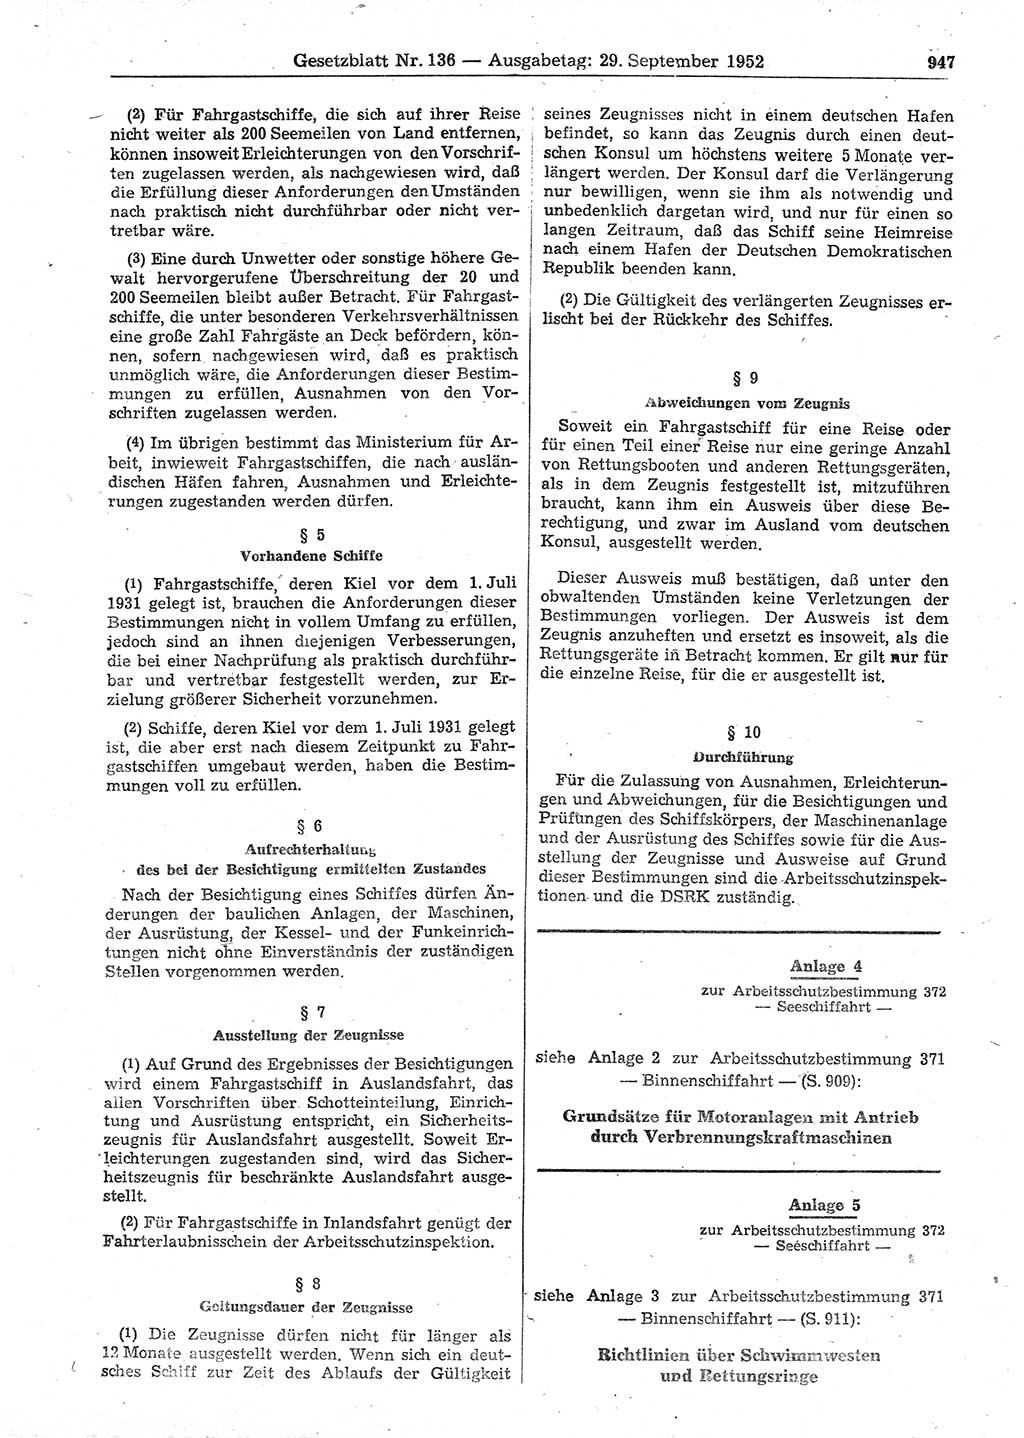 Gesetzblatt (GBl.) der Deutschen Demokratischen Republik (DDR) 1952, Seite 947 (GBl. DDR 1952, S. 947)